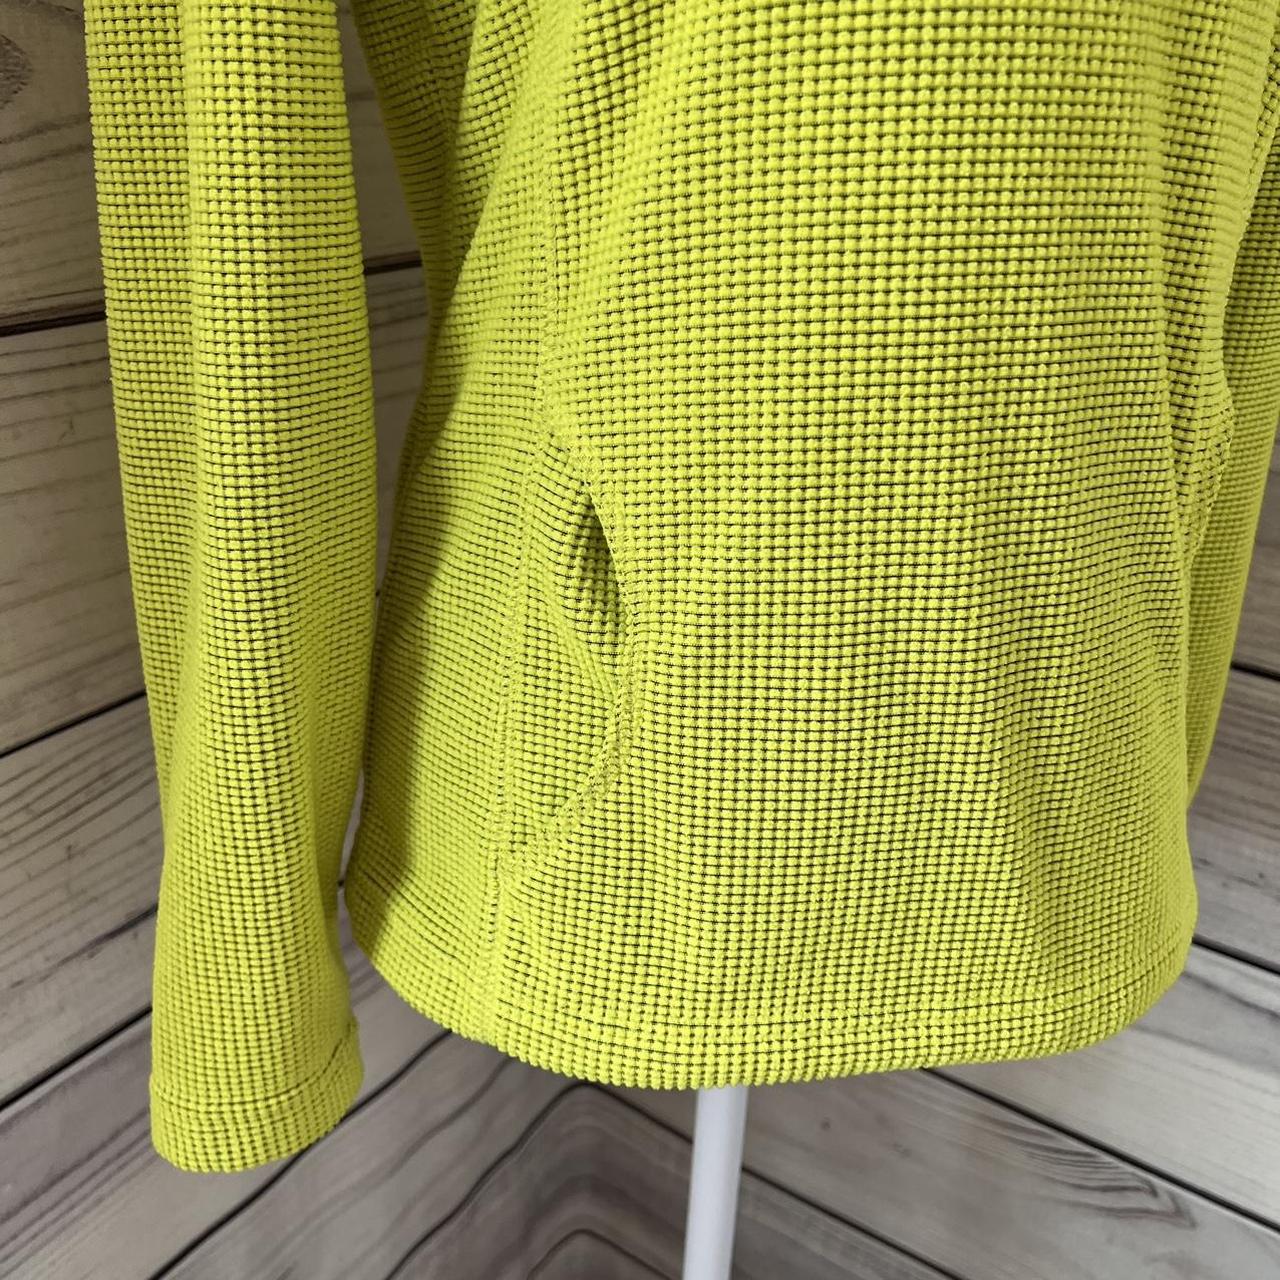 Tek Gear Bright Yellow-Green Quarter Zip Pullover - Depop